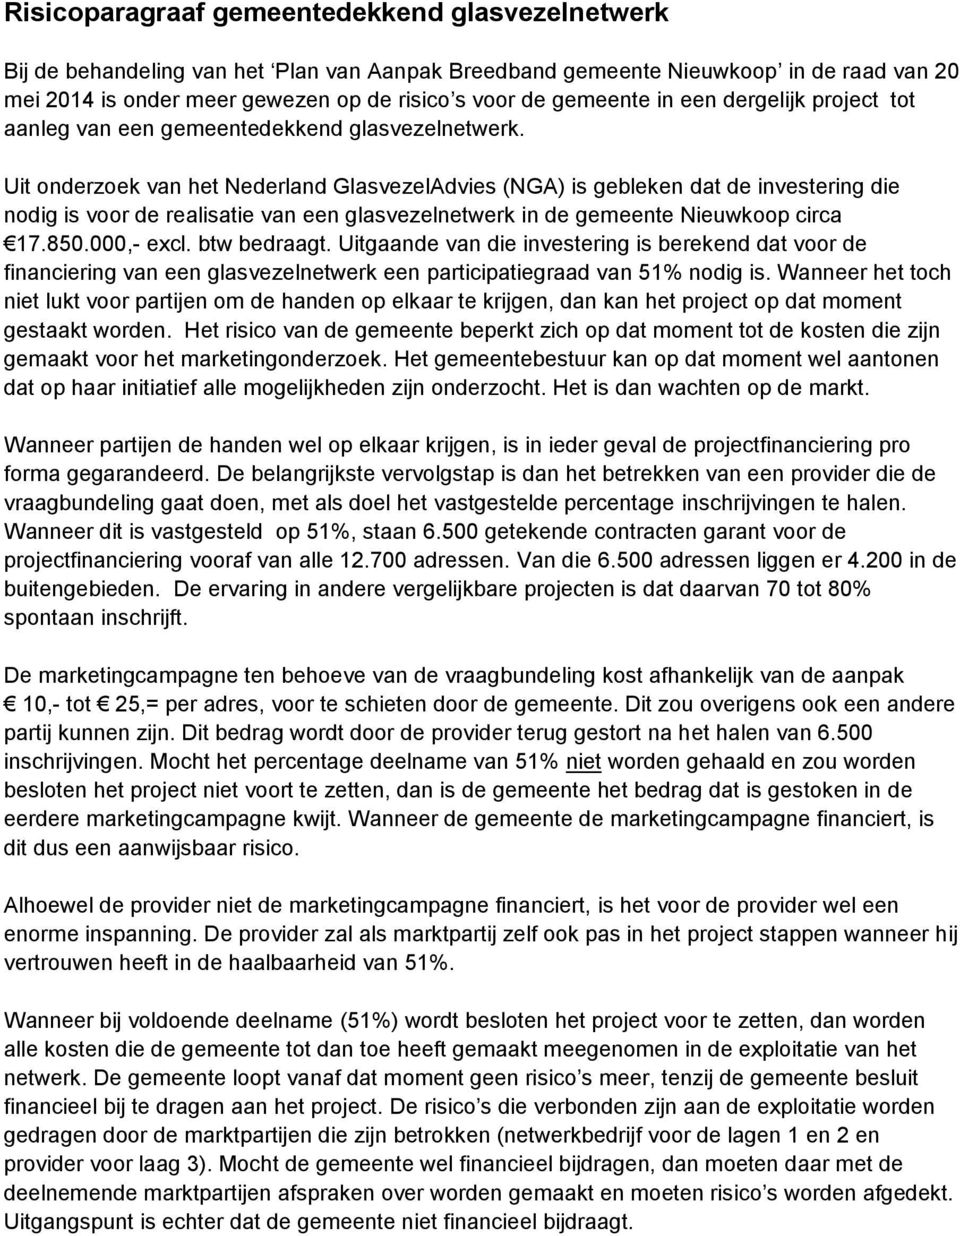 Uit onderzoek van het Nederland GlasvezelAdvies (NGA) is gebleken dat de investering die nodig is voor de realisatie van een glasvezelnetwerk in de gemeente Nieuwkoop circa 17.850.000,- excl.